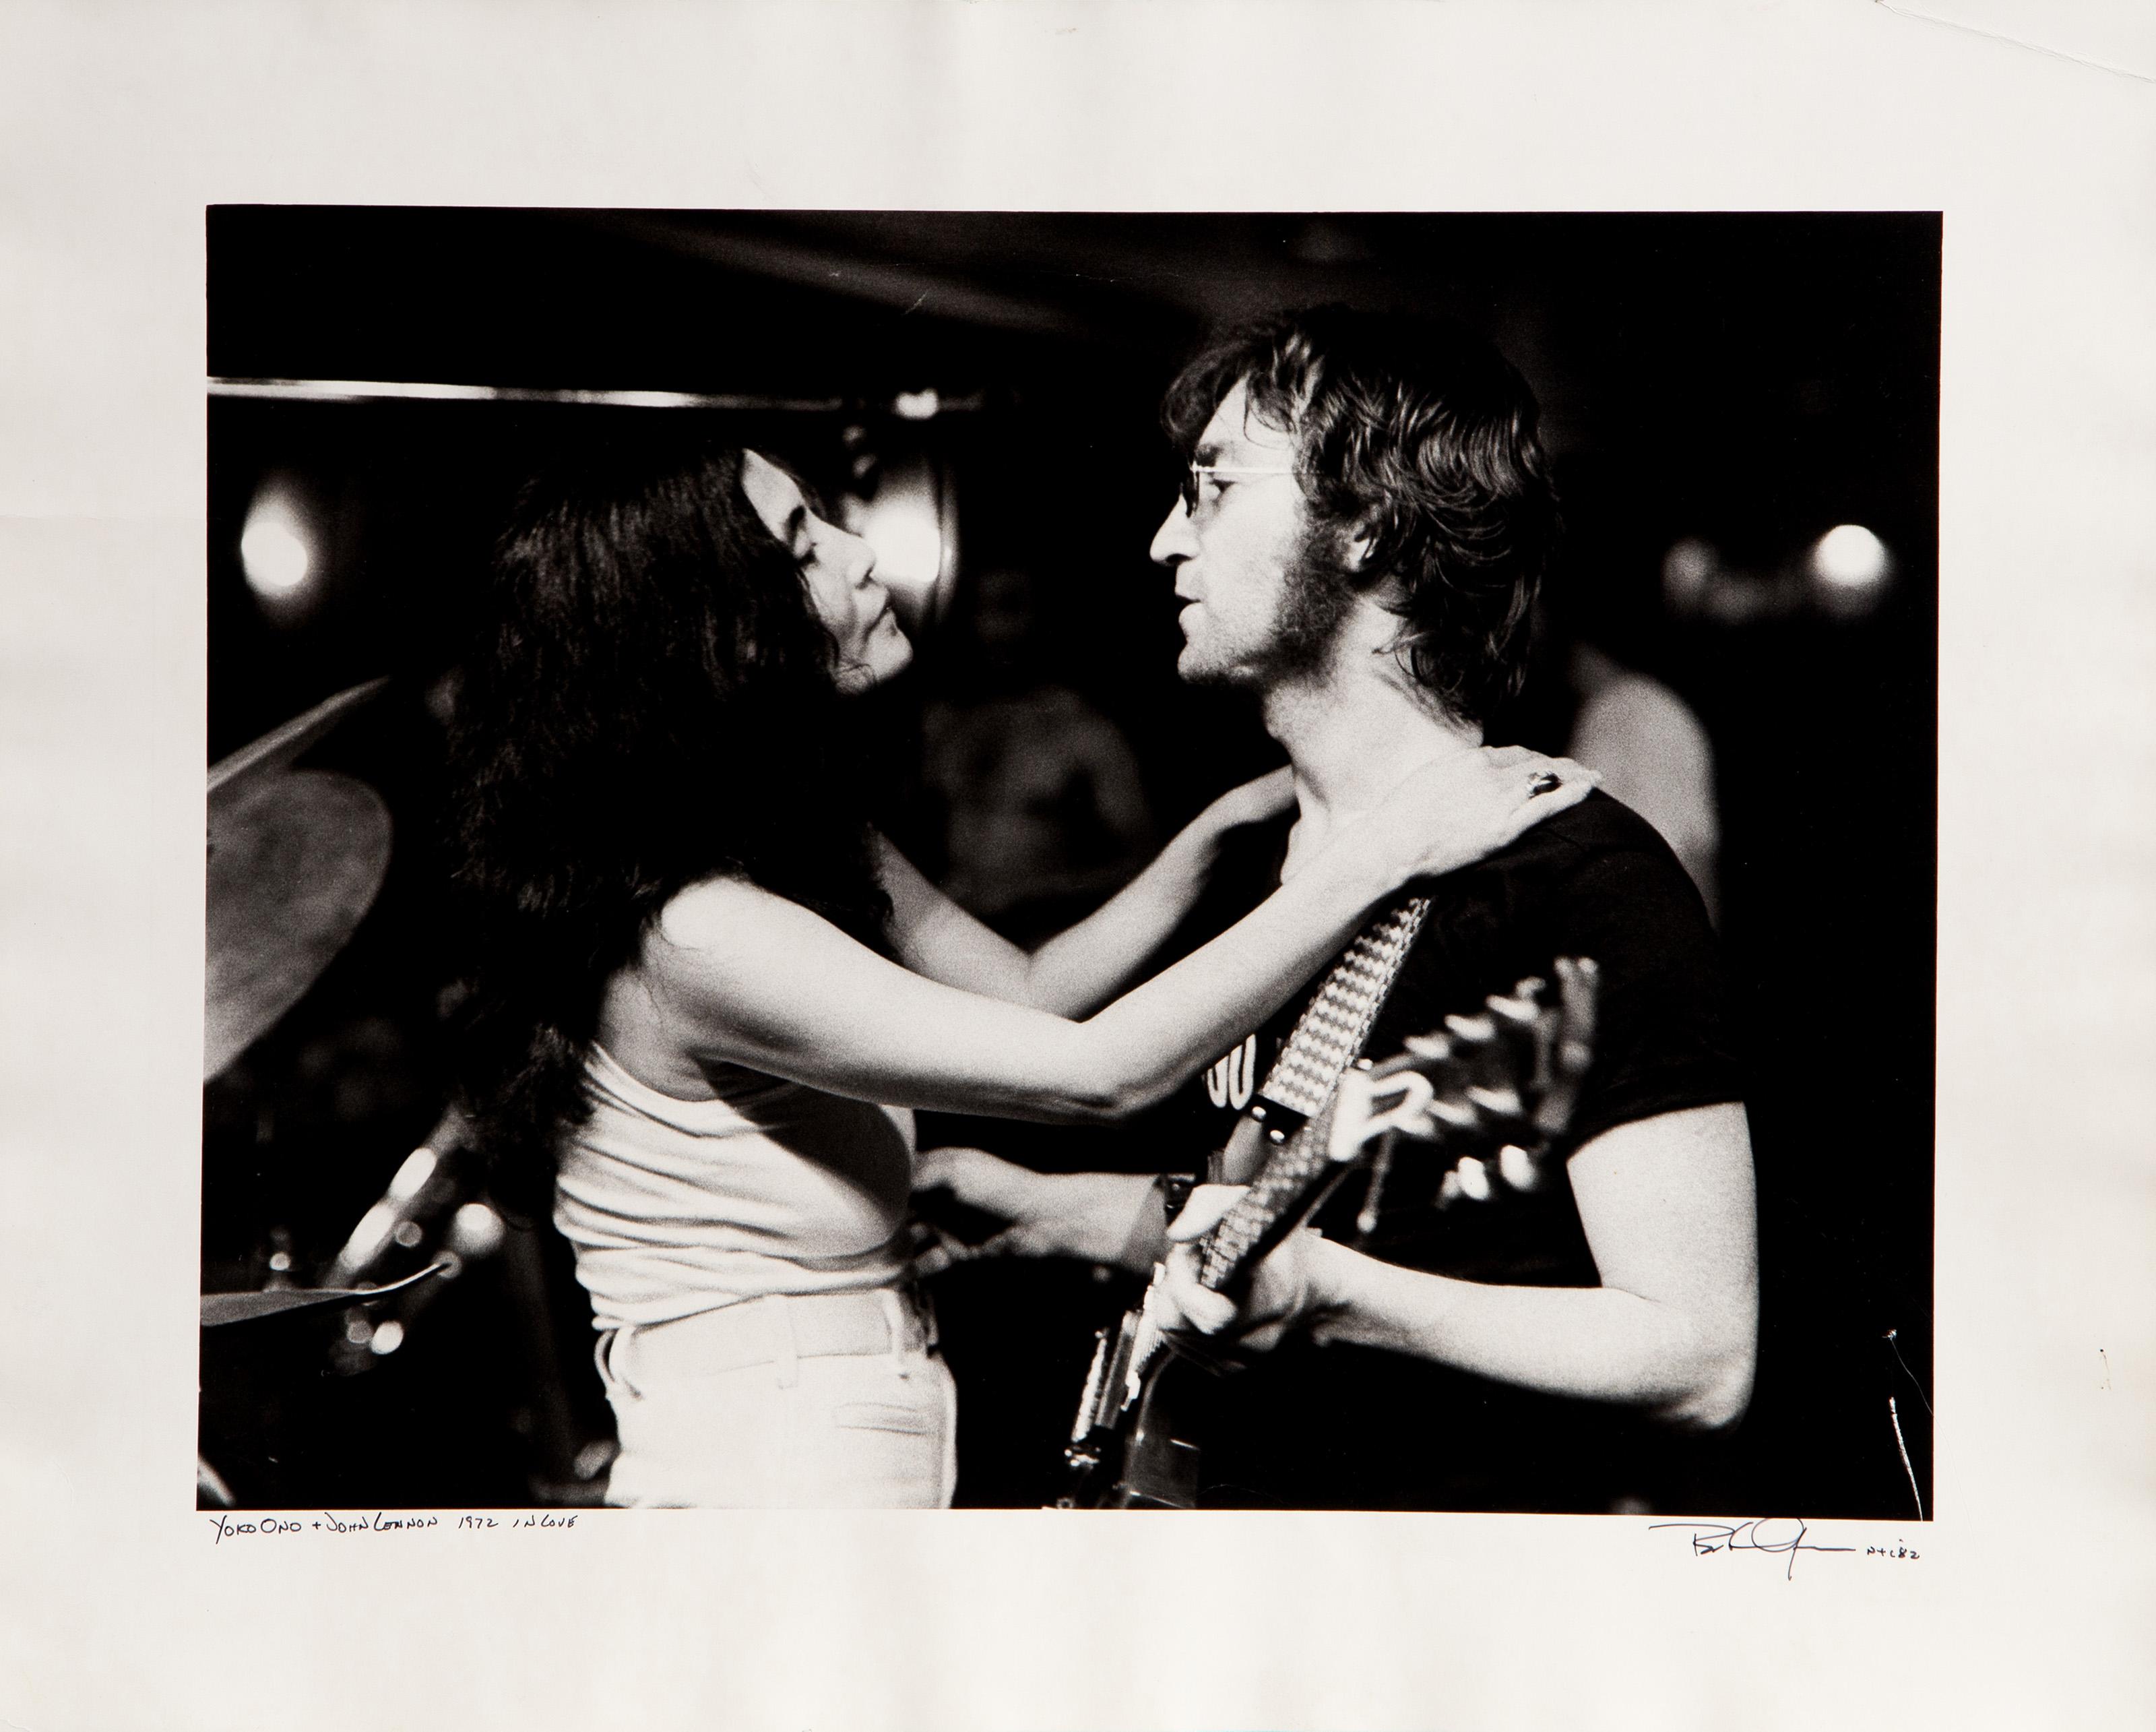 Yoko Ono und John Lennon in Liebe
Bob Gruen, Amerikaner (1945)
Datum: 1972 (gedruckt 1982)
Gelatinesilberdruck Fotografie, signiert, betitelt und datiert mit Feder
Bildgröße: 12 x 16 Zoll
Größe: 16 x 20 Zoll (40,64 x 50,8 cm)